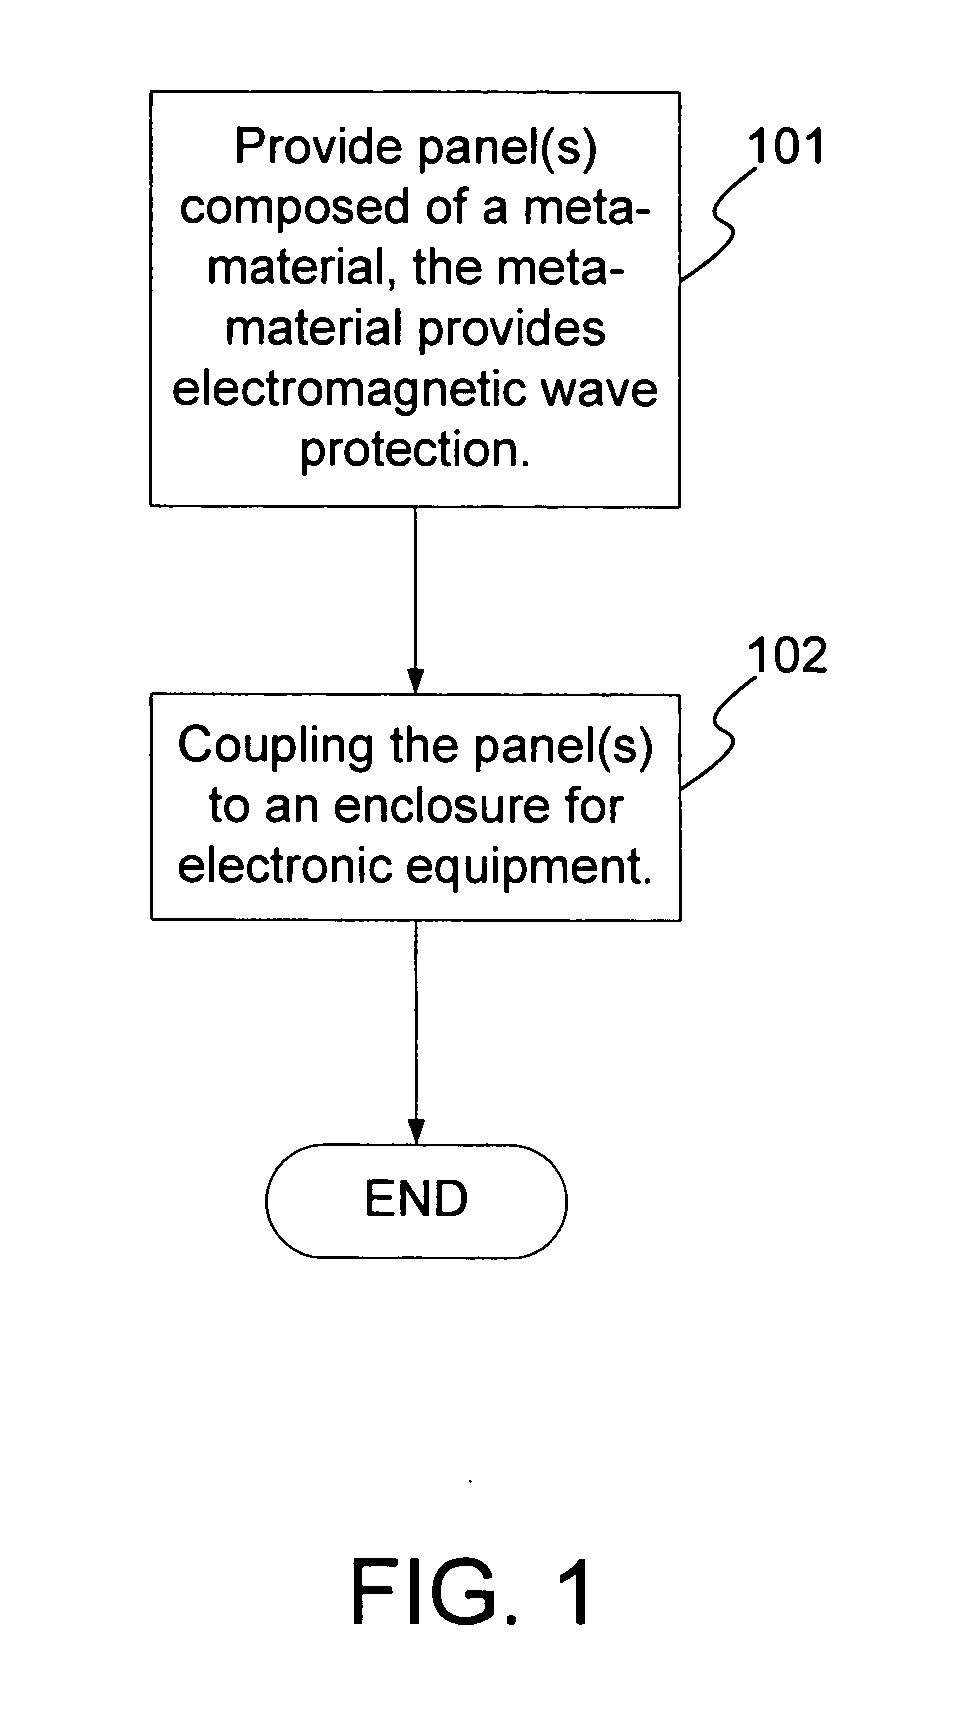 Electromagnetic shield using meta-material